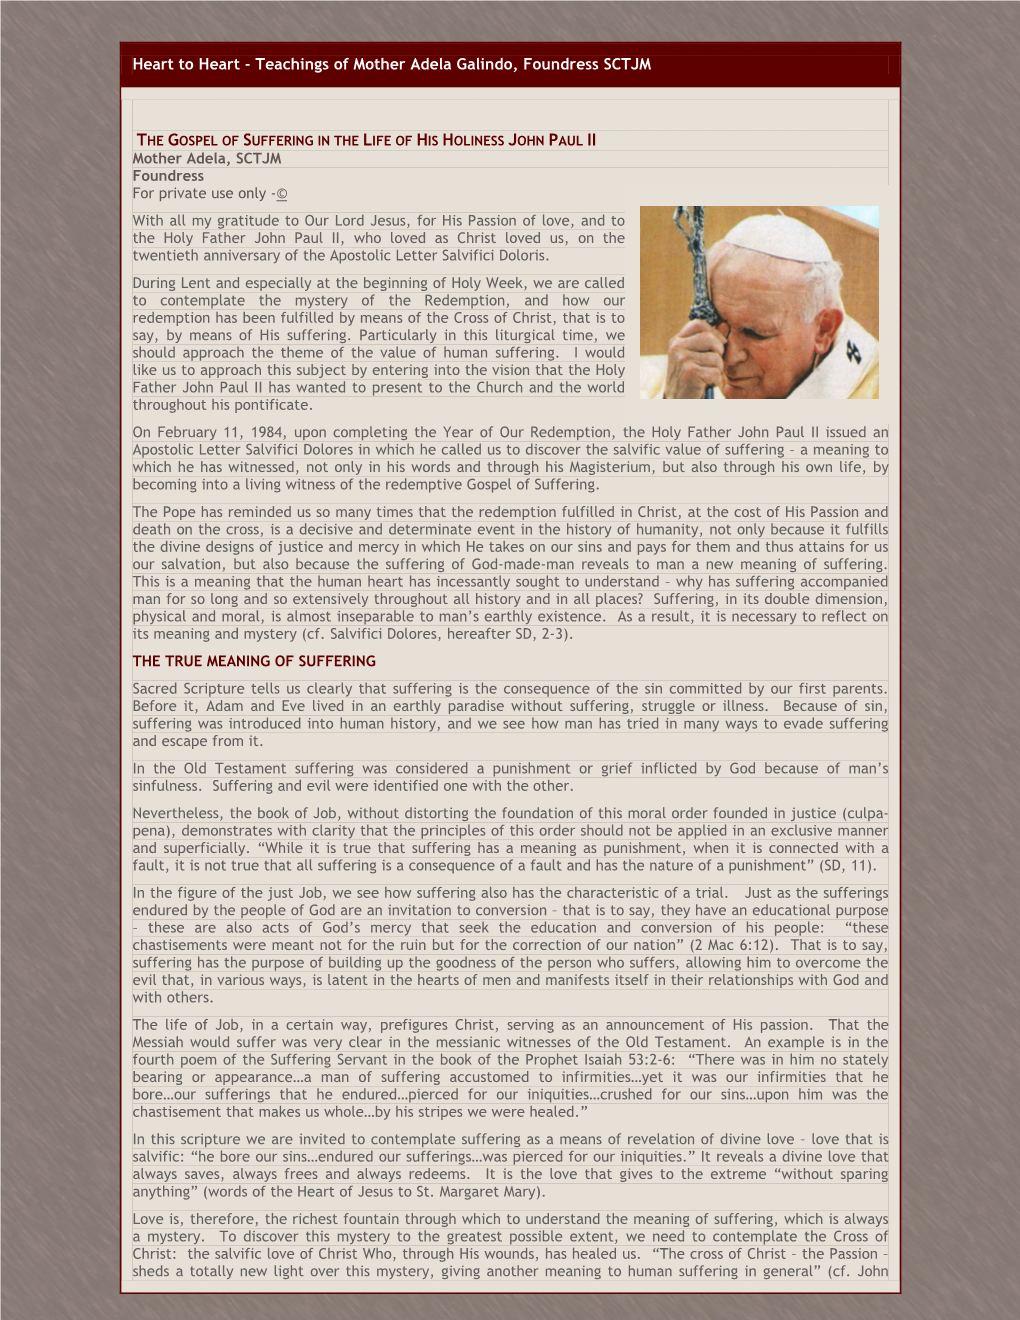 The Gospel of Suffering in the Life of John Paul II